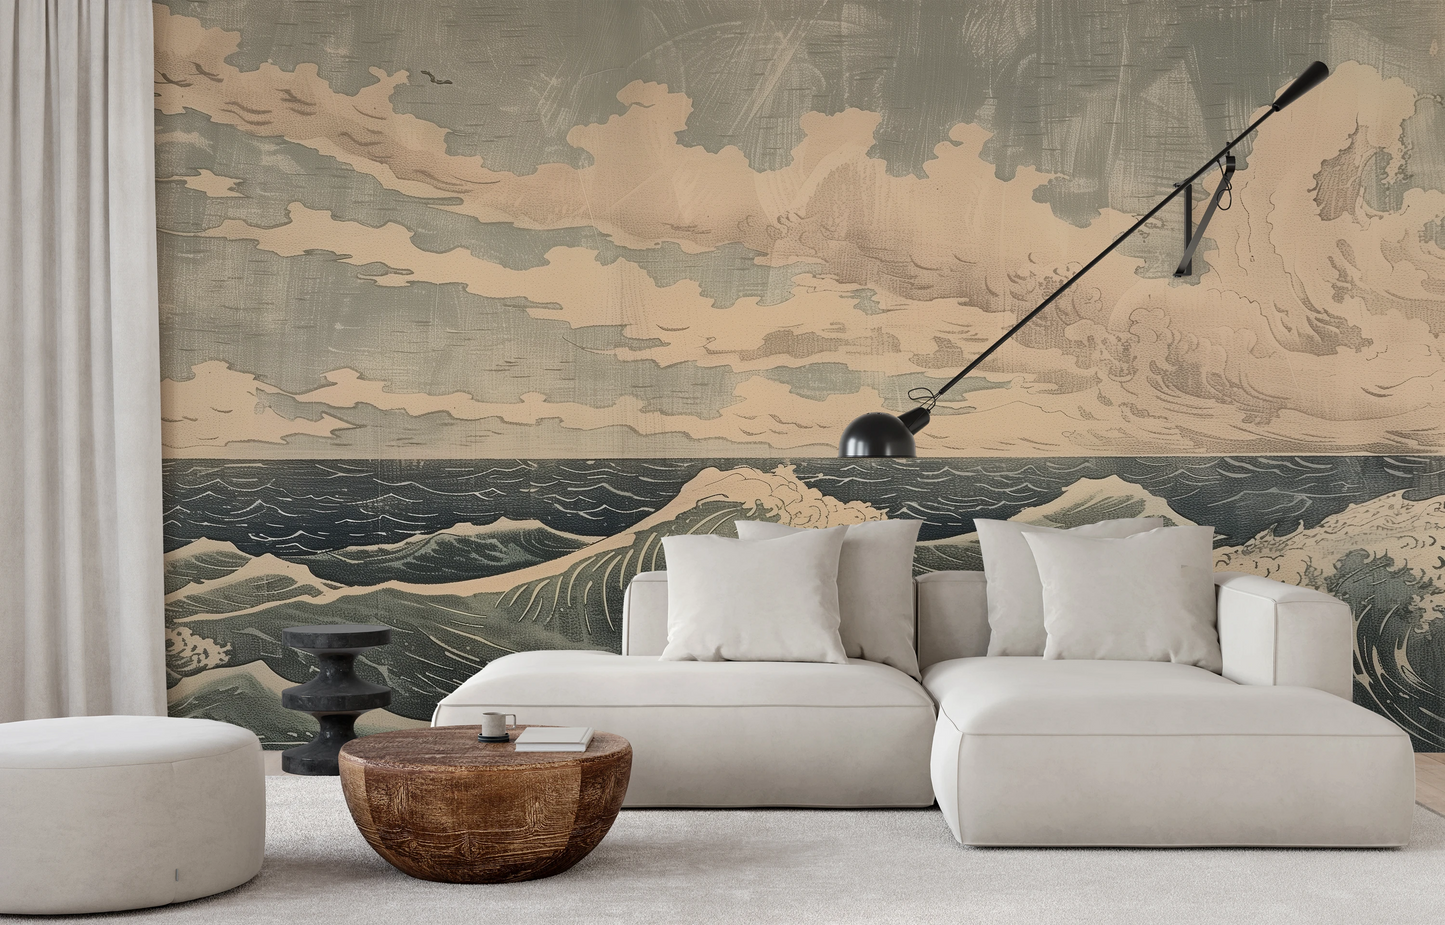 Fototapeta artystyczna o nazwie Cloudy Sea Harmony pokazana w aranżacji wnętrza.